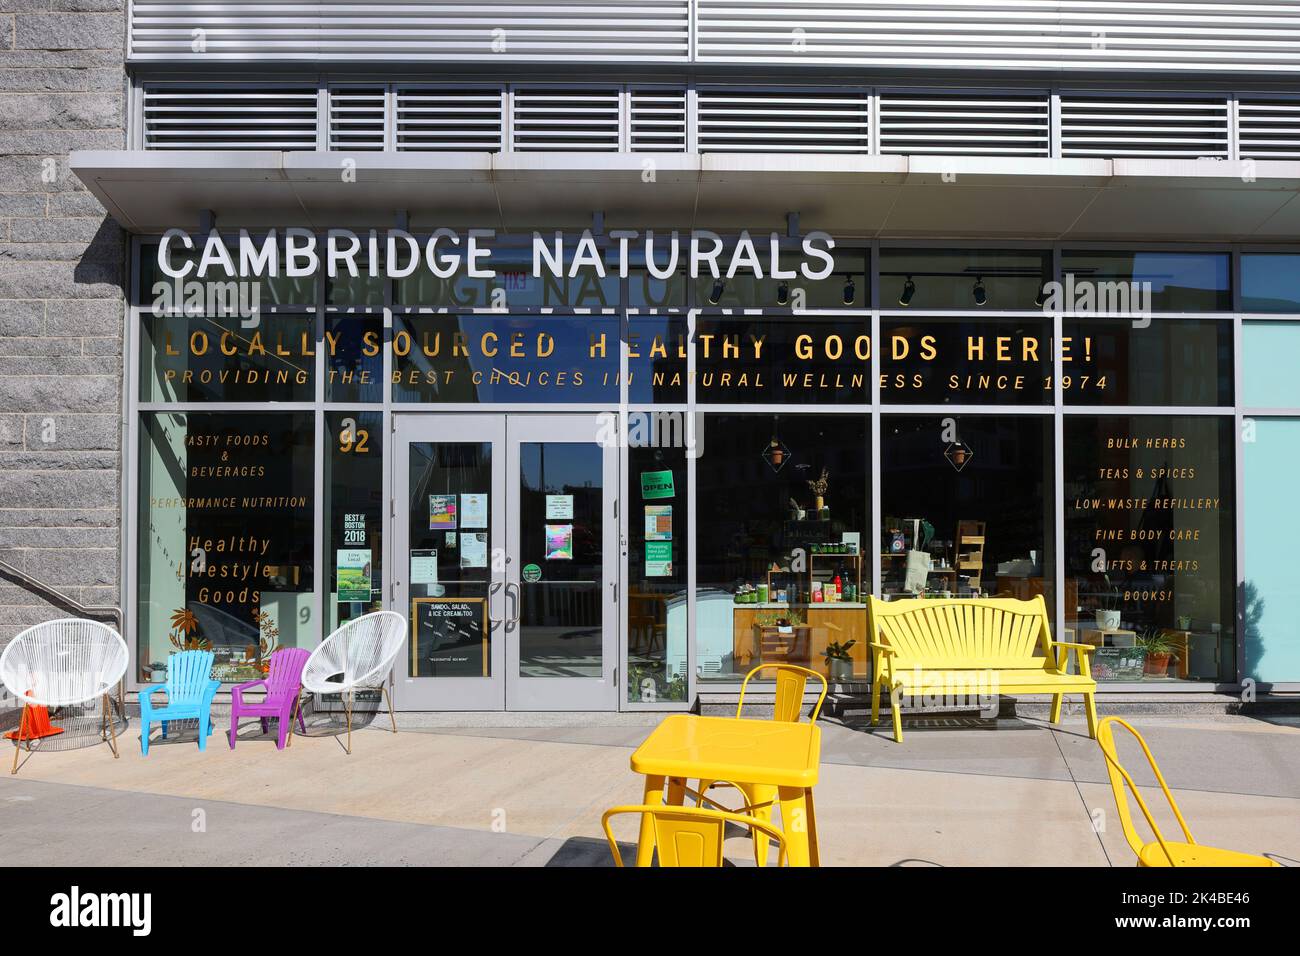 Cambridge Naturals, 92 Guest St, Boston storefront foto di un negozio di salute e benessere a Boston Landing. brighton, massachusetts. Foto Stock